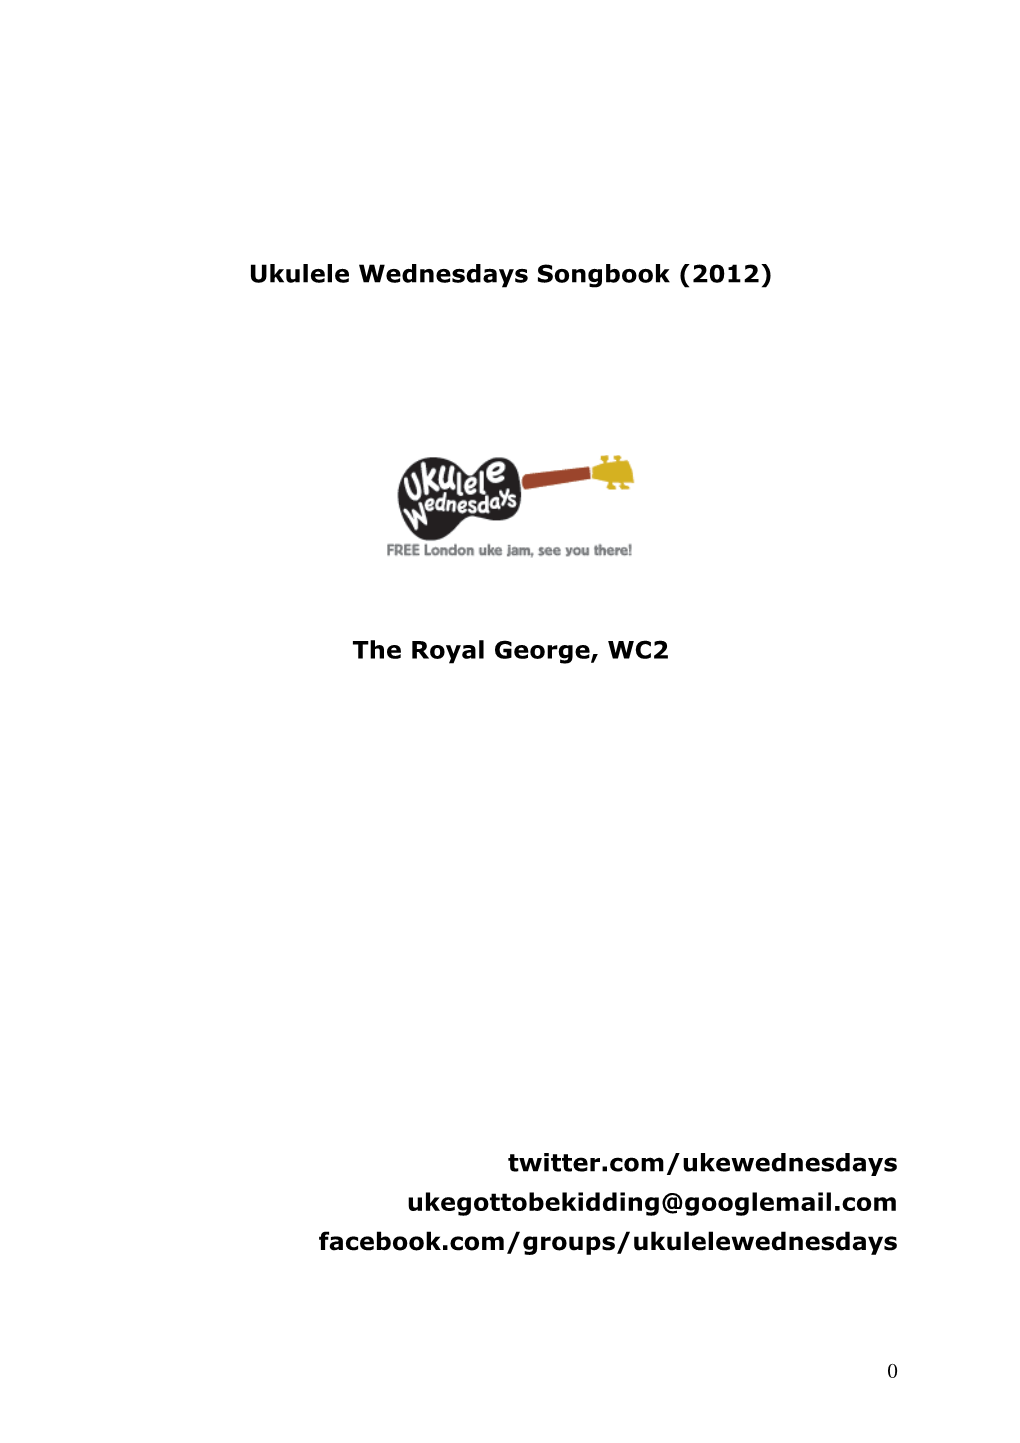 Ukulele Wednesdays Songbook 2012 V1 (PDF)